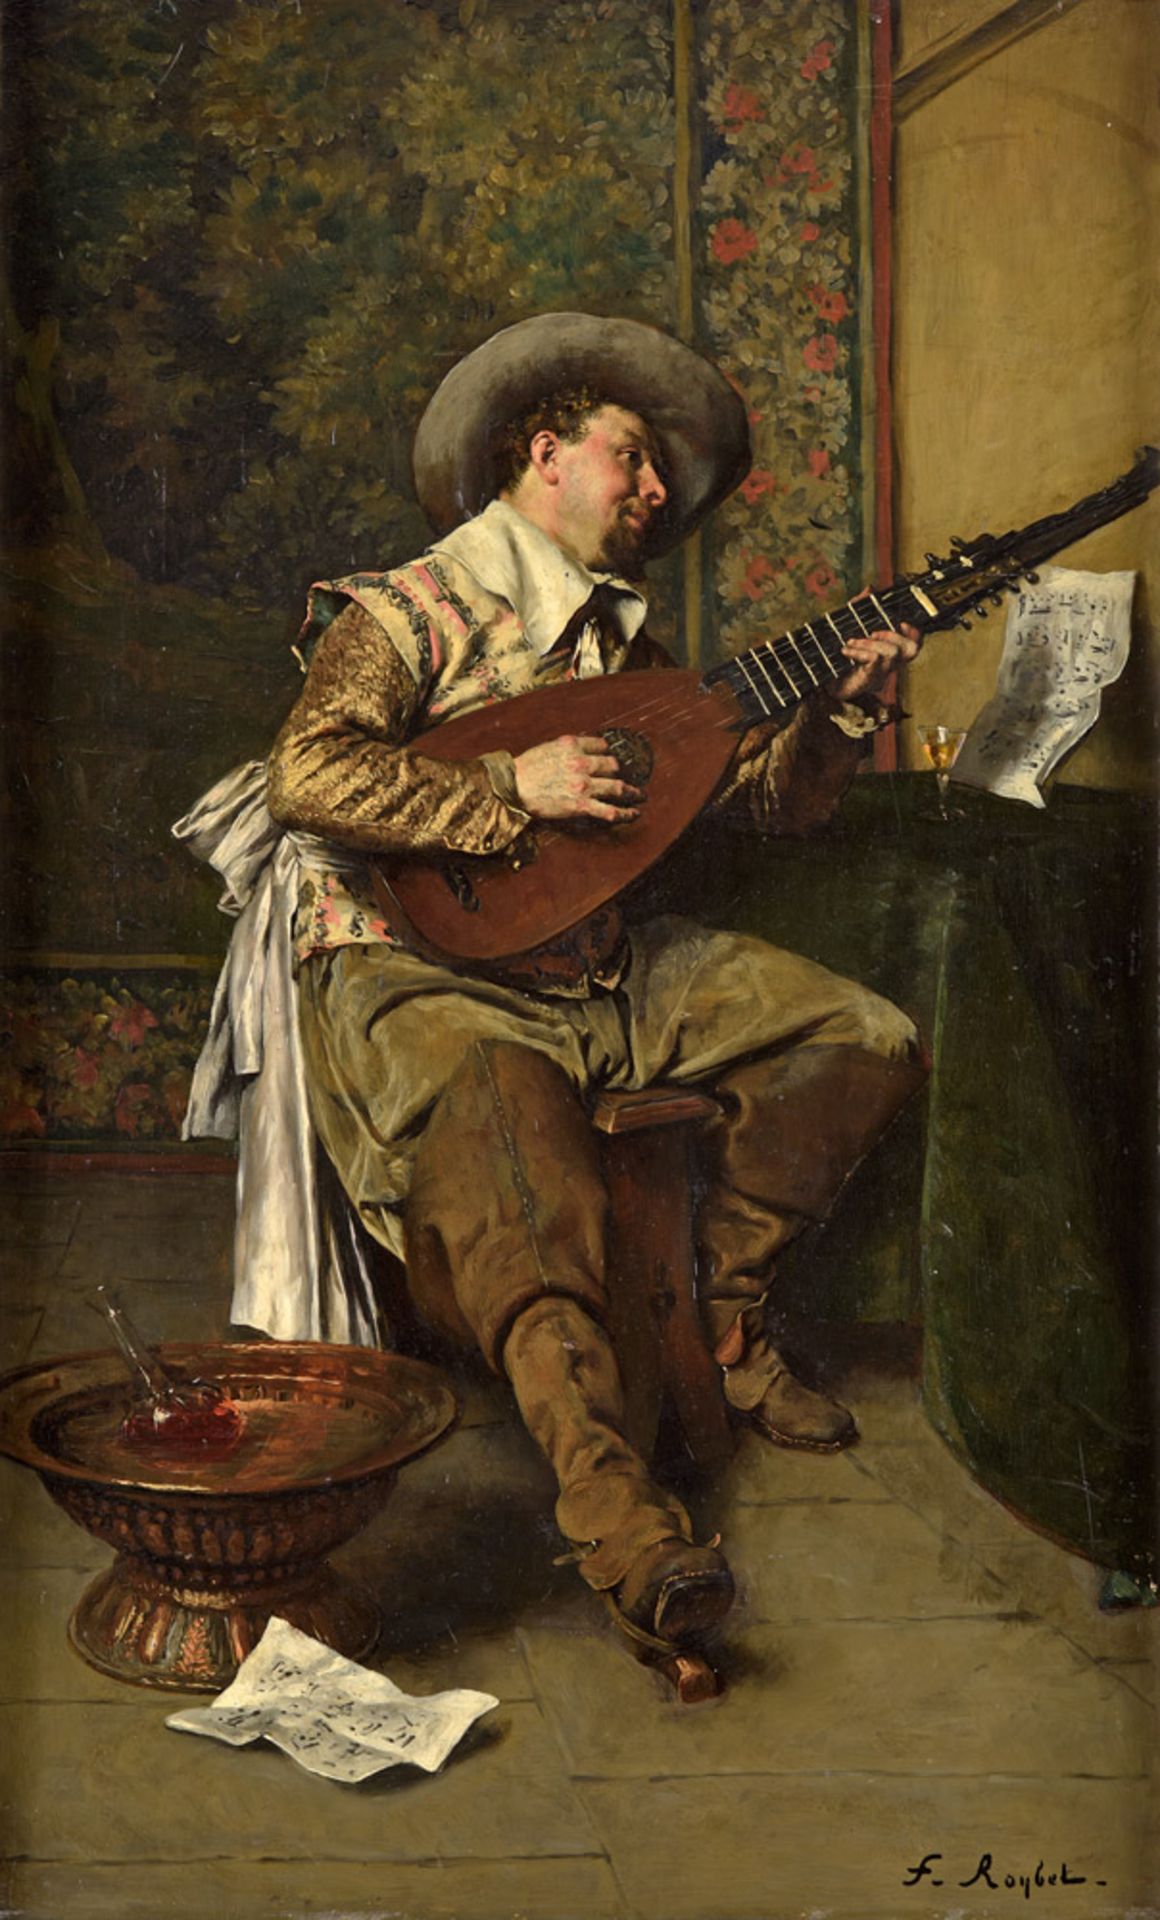 Roybet, Ferdinand 1840 Uzès - 1920 Paris